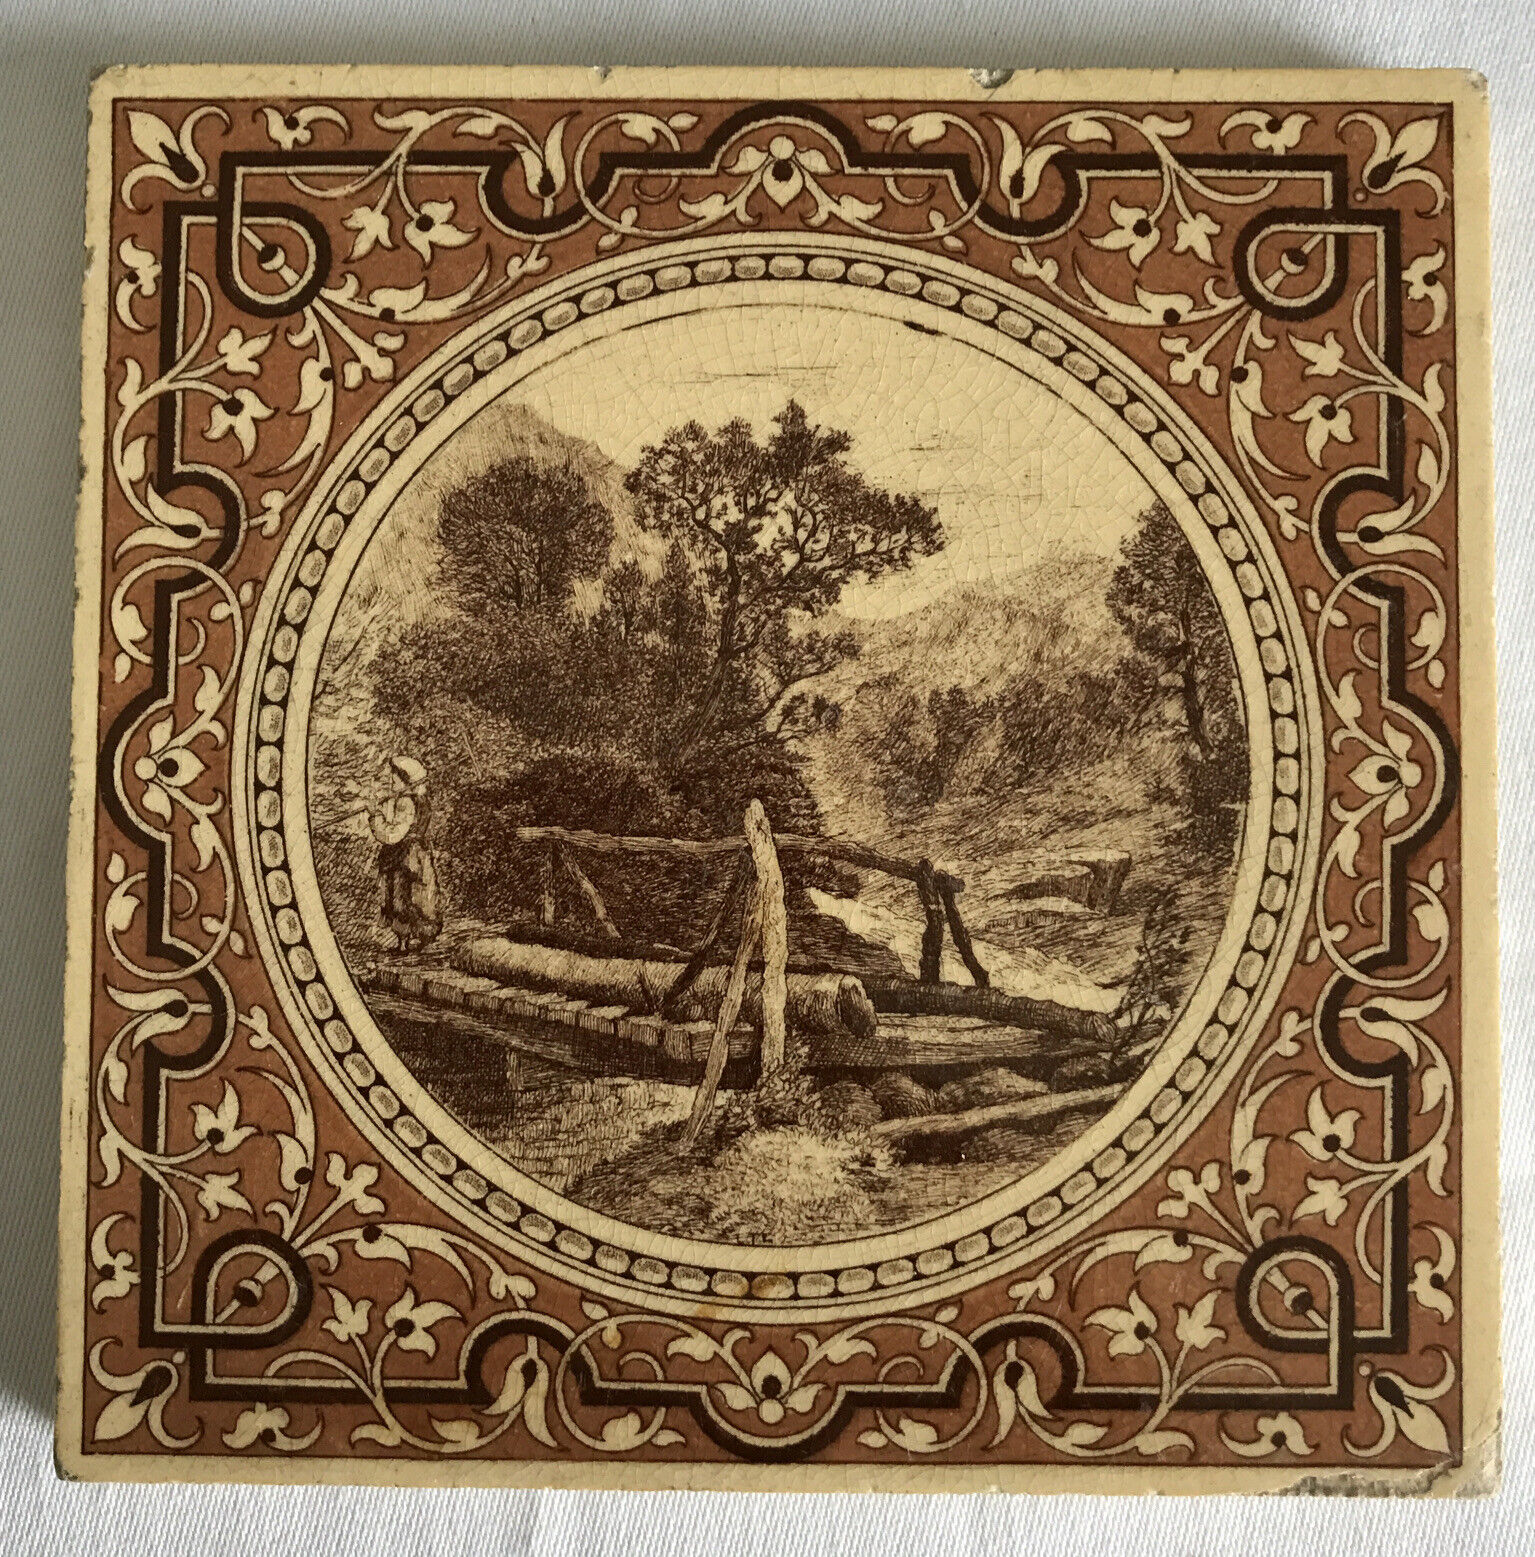 Mintons Landscape Series Antique c.1890 Victorian Transfer Print Tile 6” Square